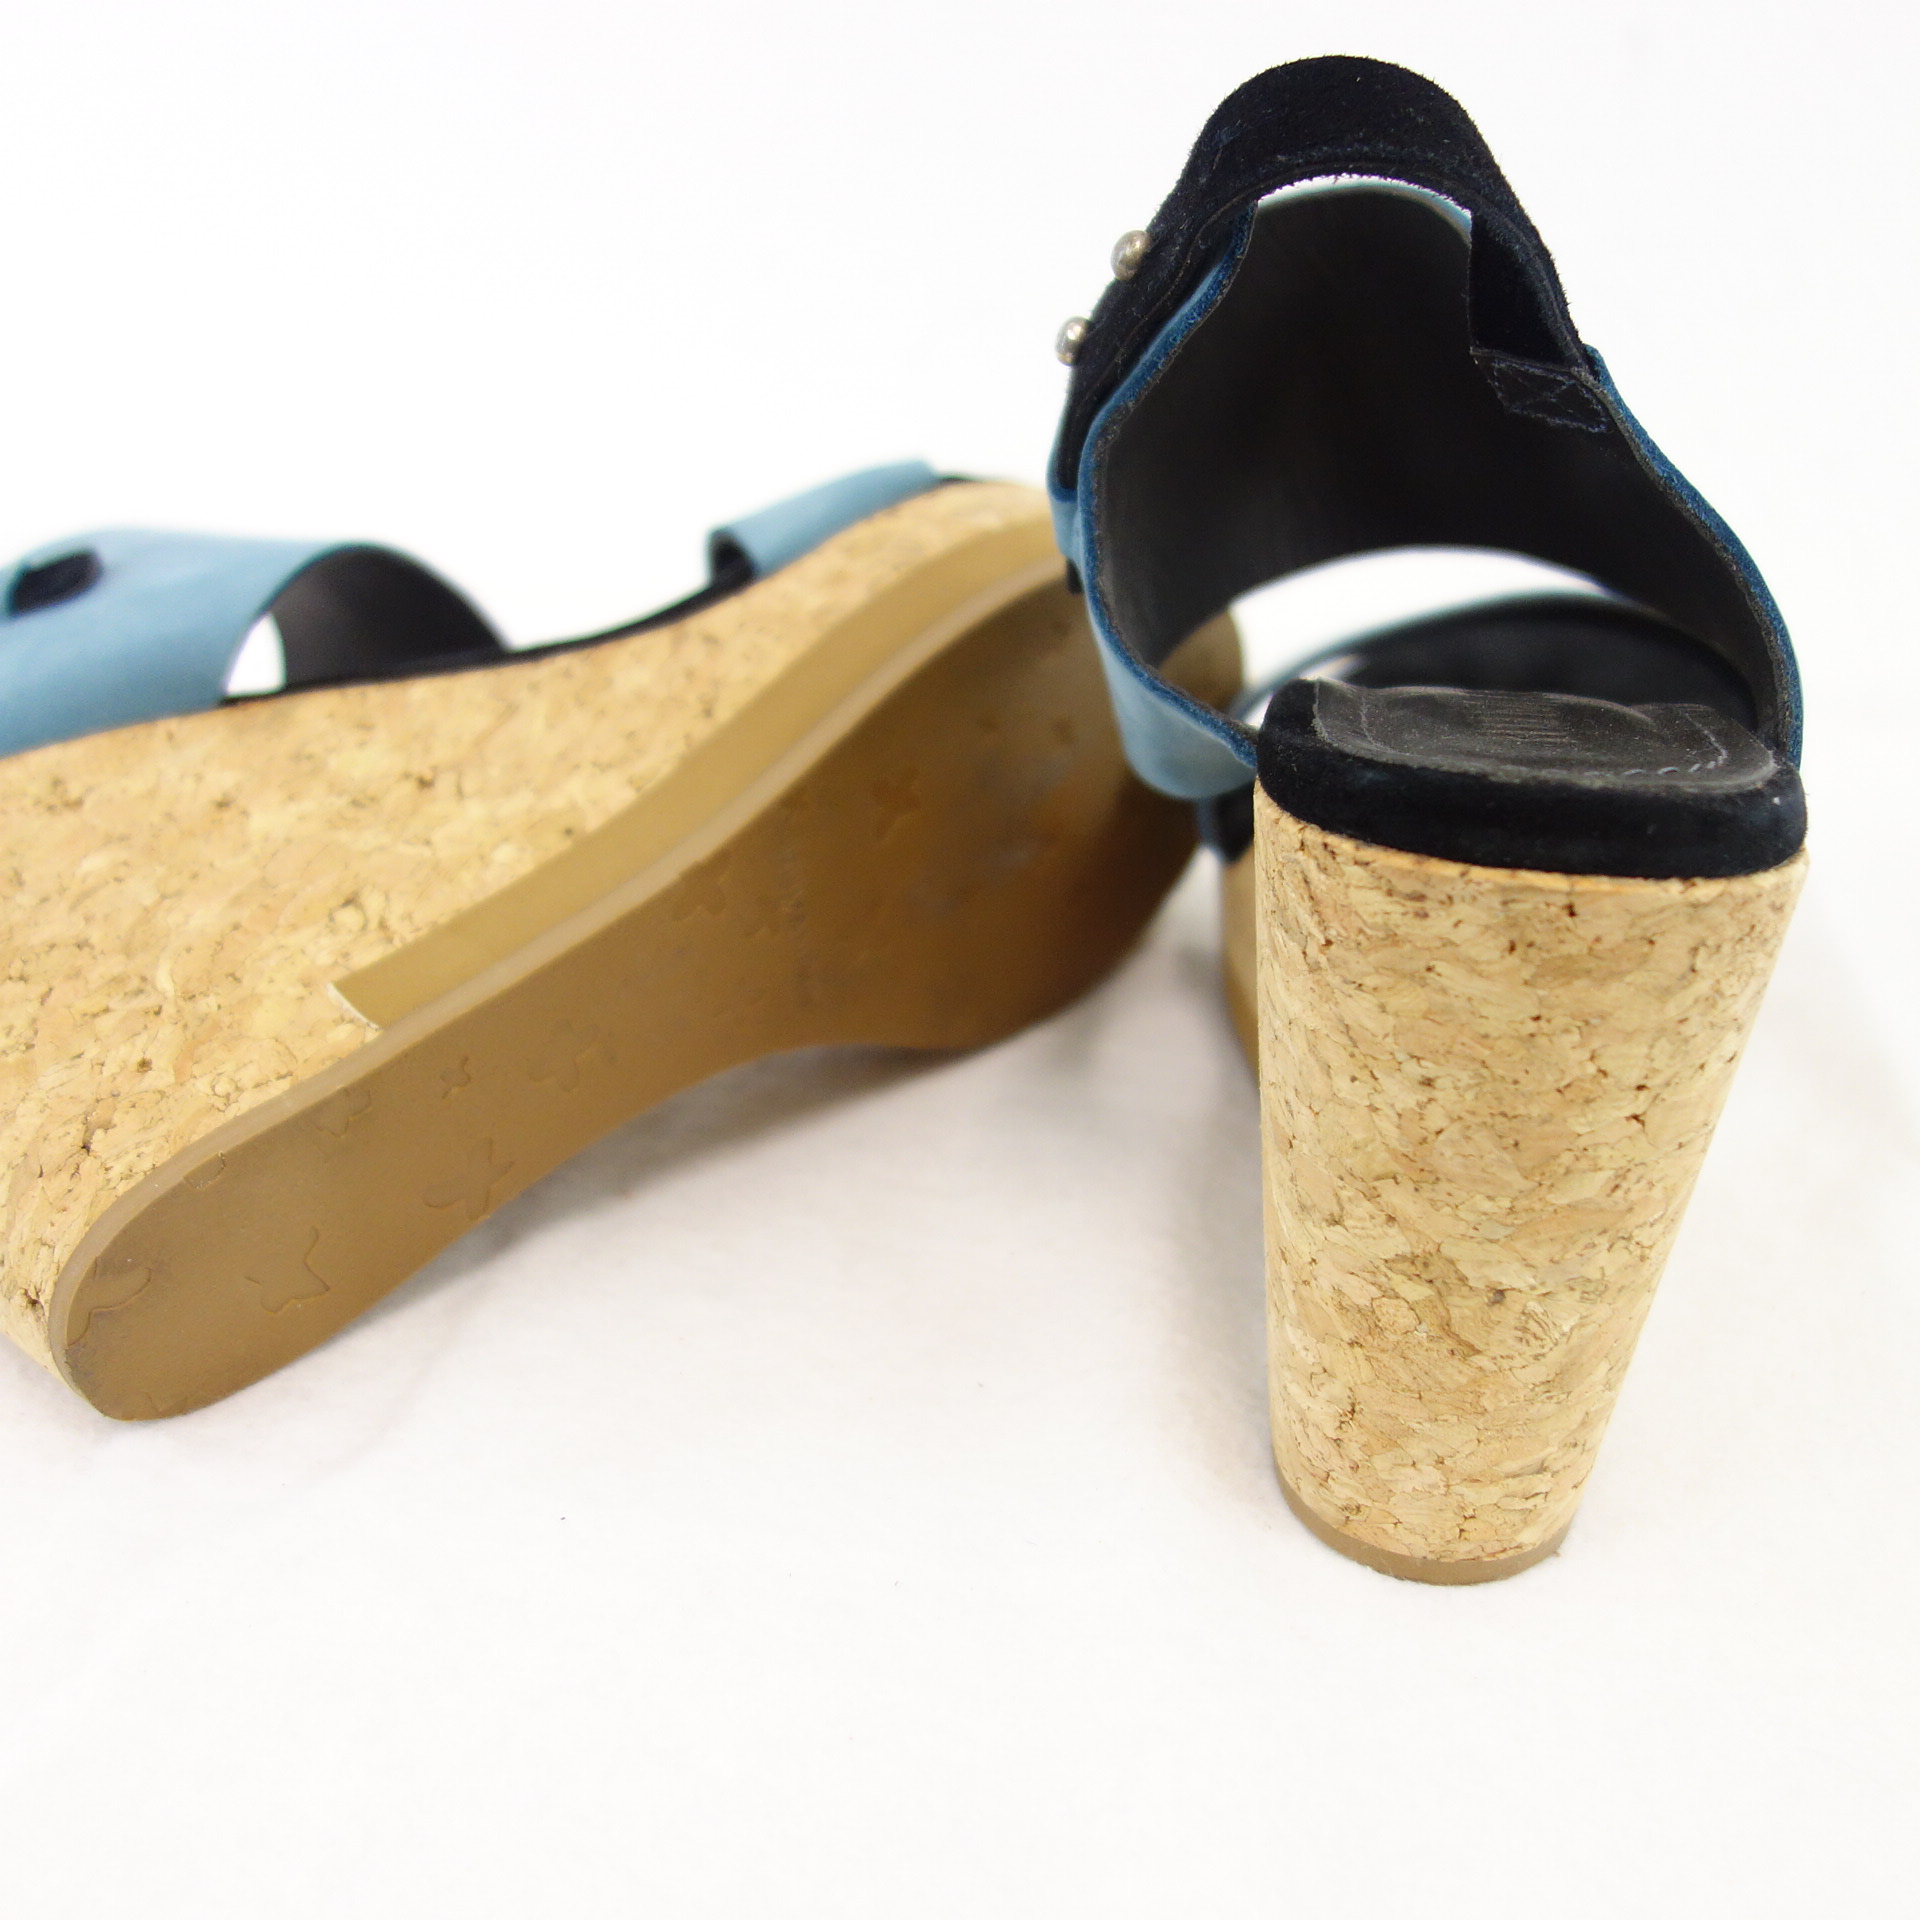 HUMANOID Damen Schuhe Sandaletten Pumps Wedges Blau Leder Kork Gr 40 ( 39 )